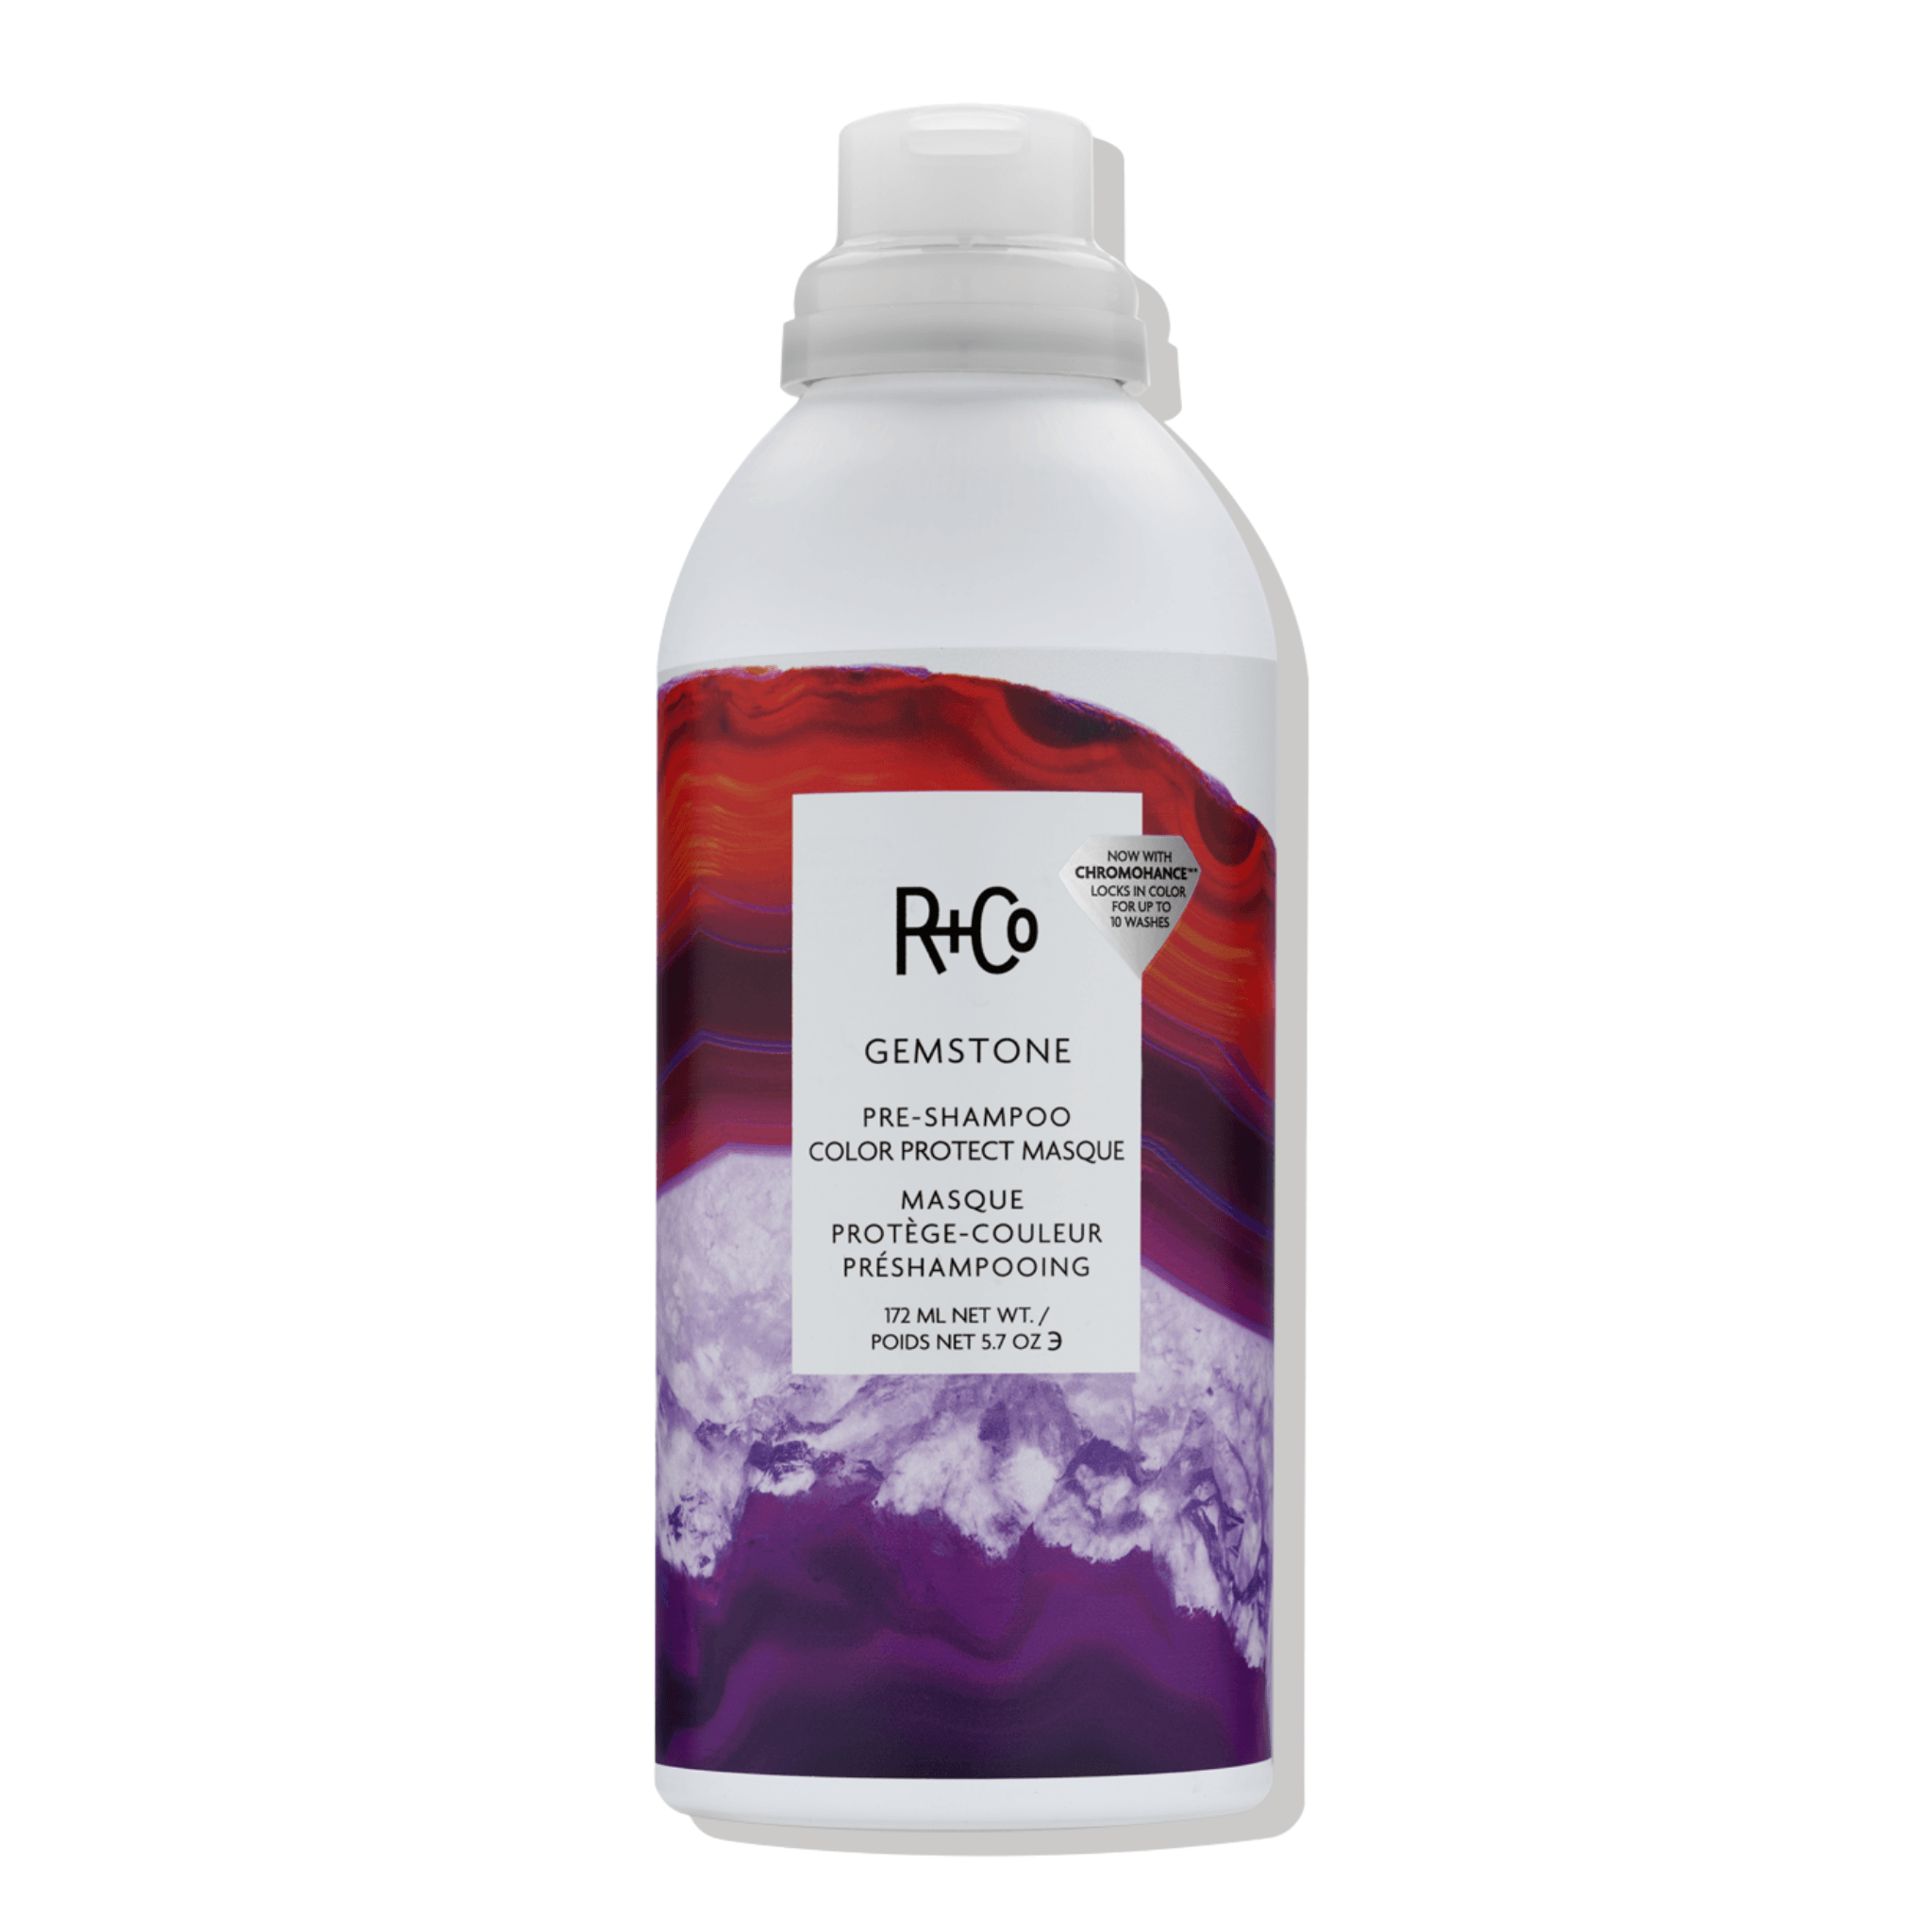 R+Co. Gemstone Masque Pré-Shampoing Protège-Couleur - 172 ml - Concept C. Shop